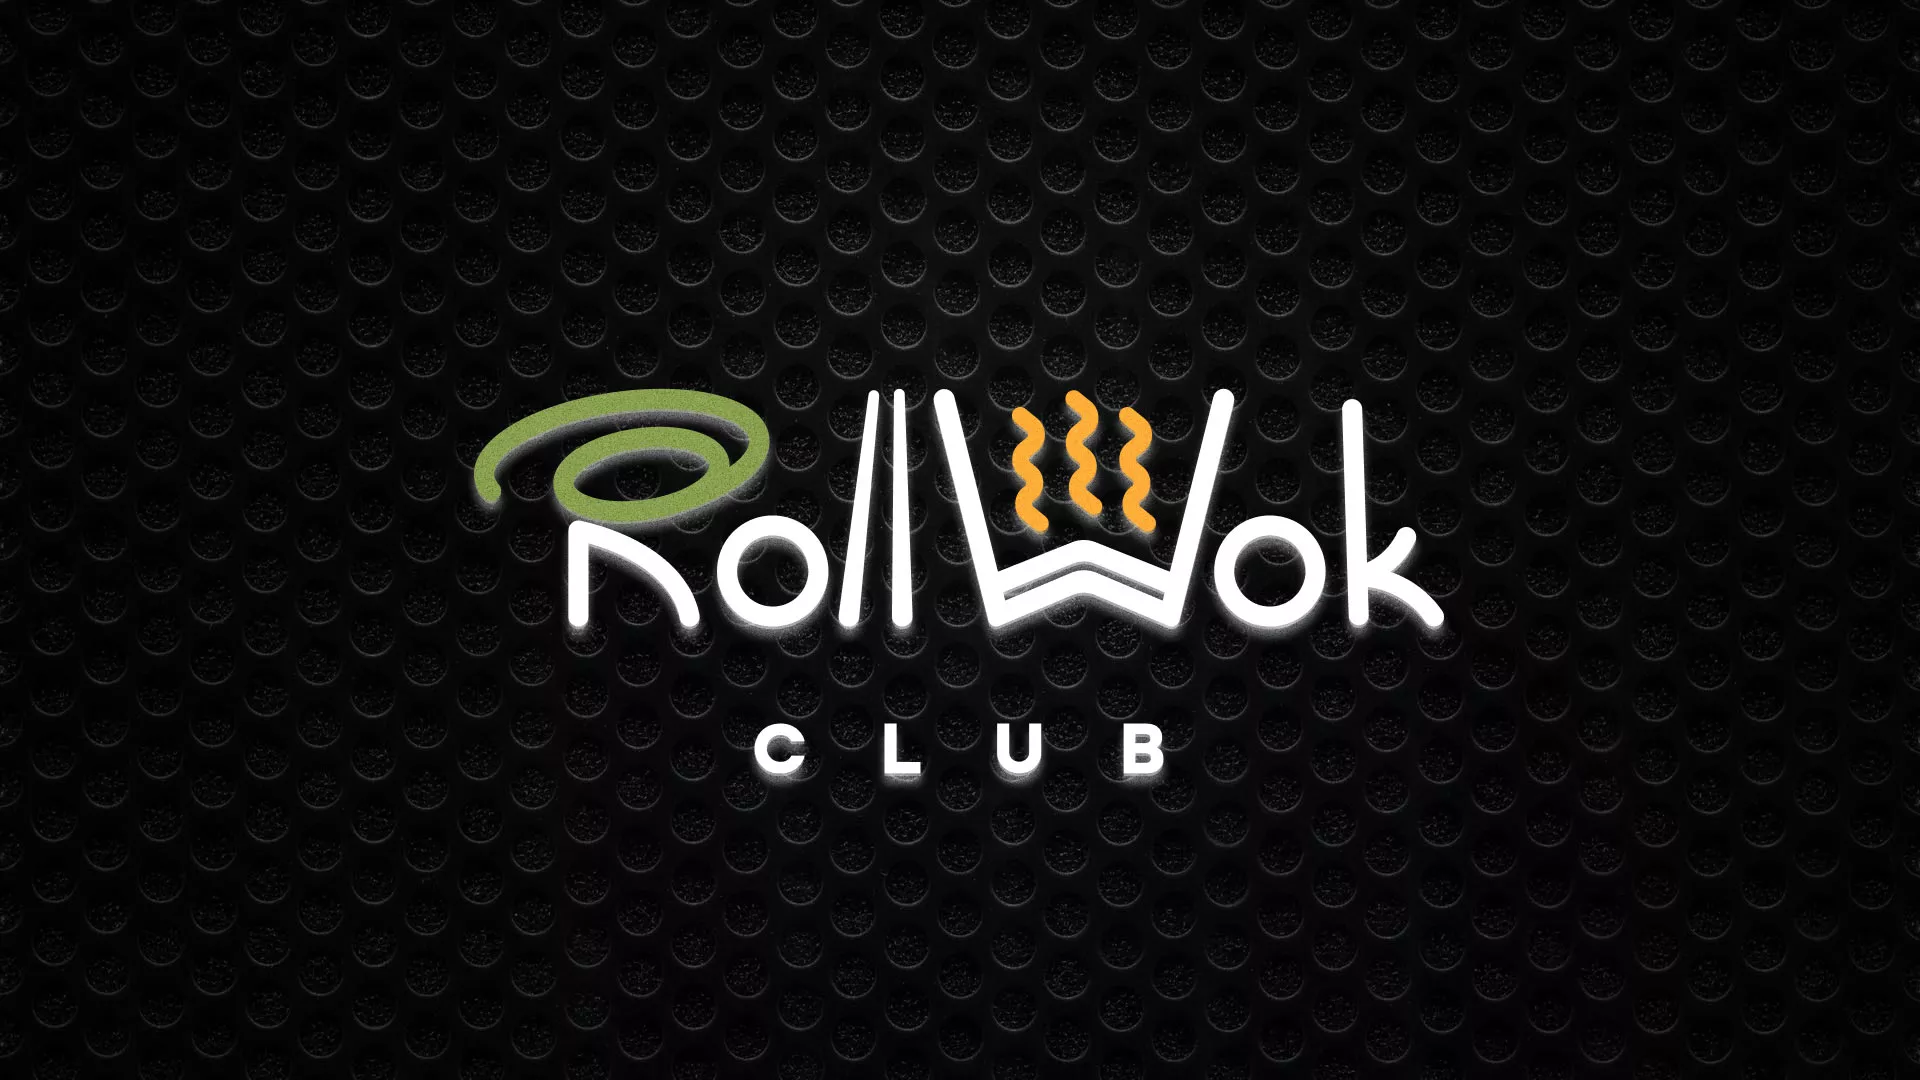 Брендирование торговых точек суши-бара «Roll Wok Club» в Волгограде